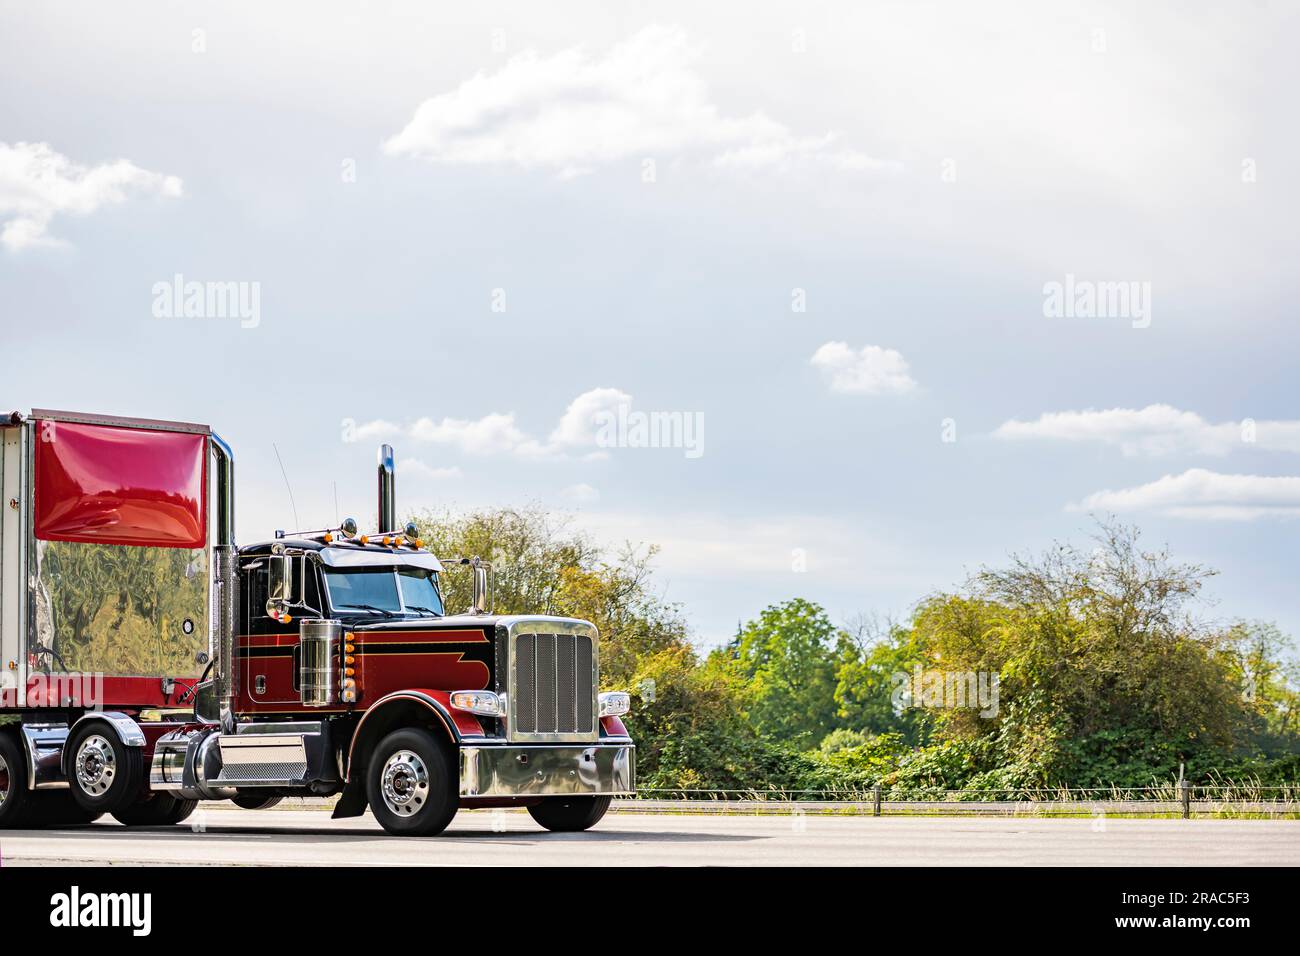 Industrieller amerikanischer Day Cab im alten Stil, burgunderrot, großer Sattelschlepper mit hohem Chromrohr, der Fracht in einem spoi in Rot transportiert Stockfoto